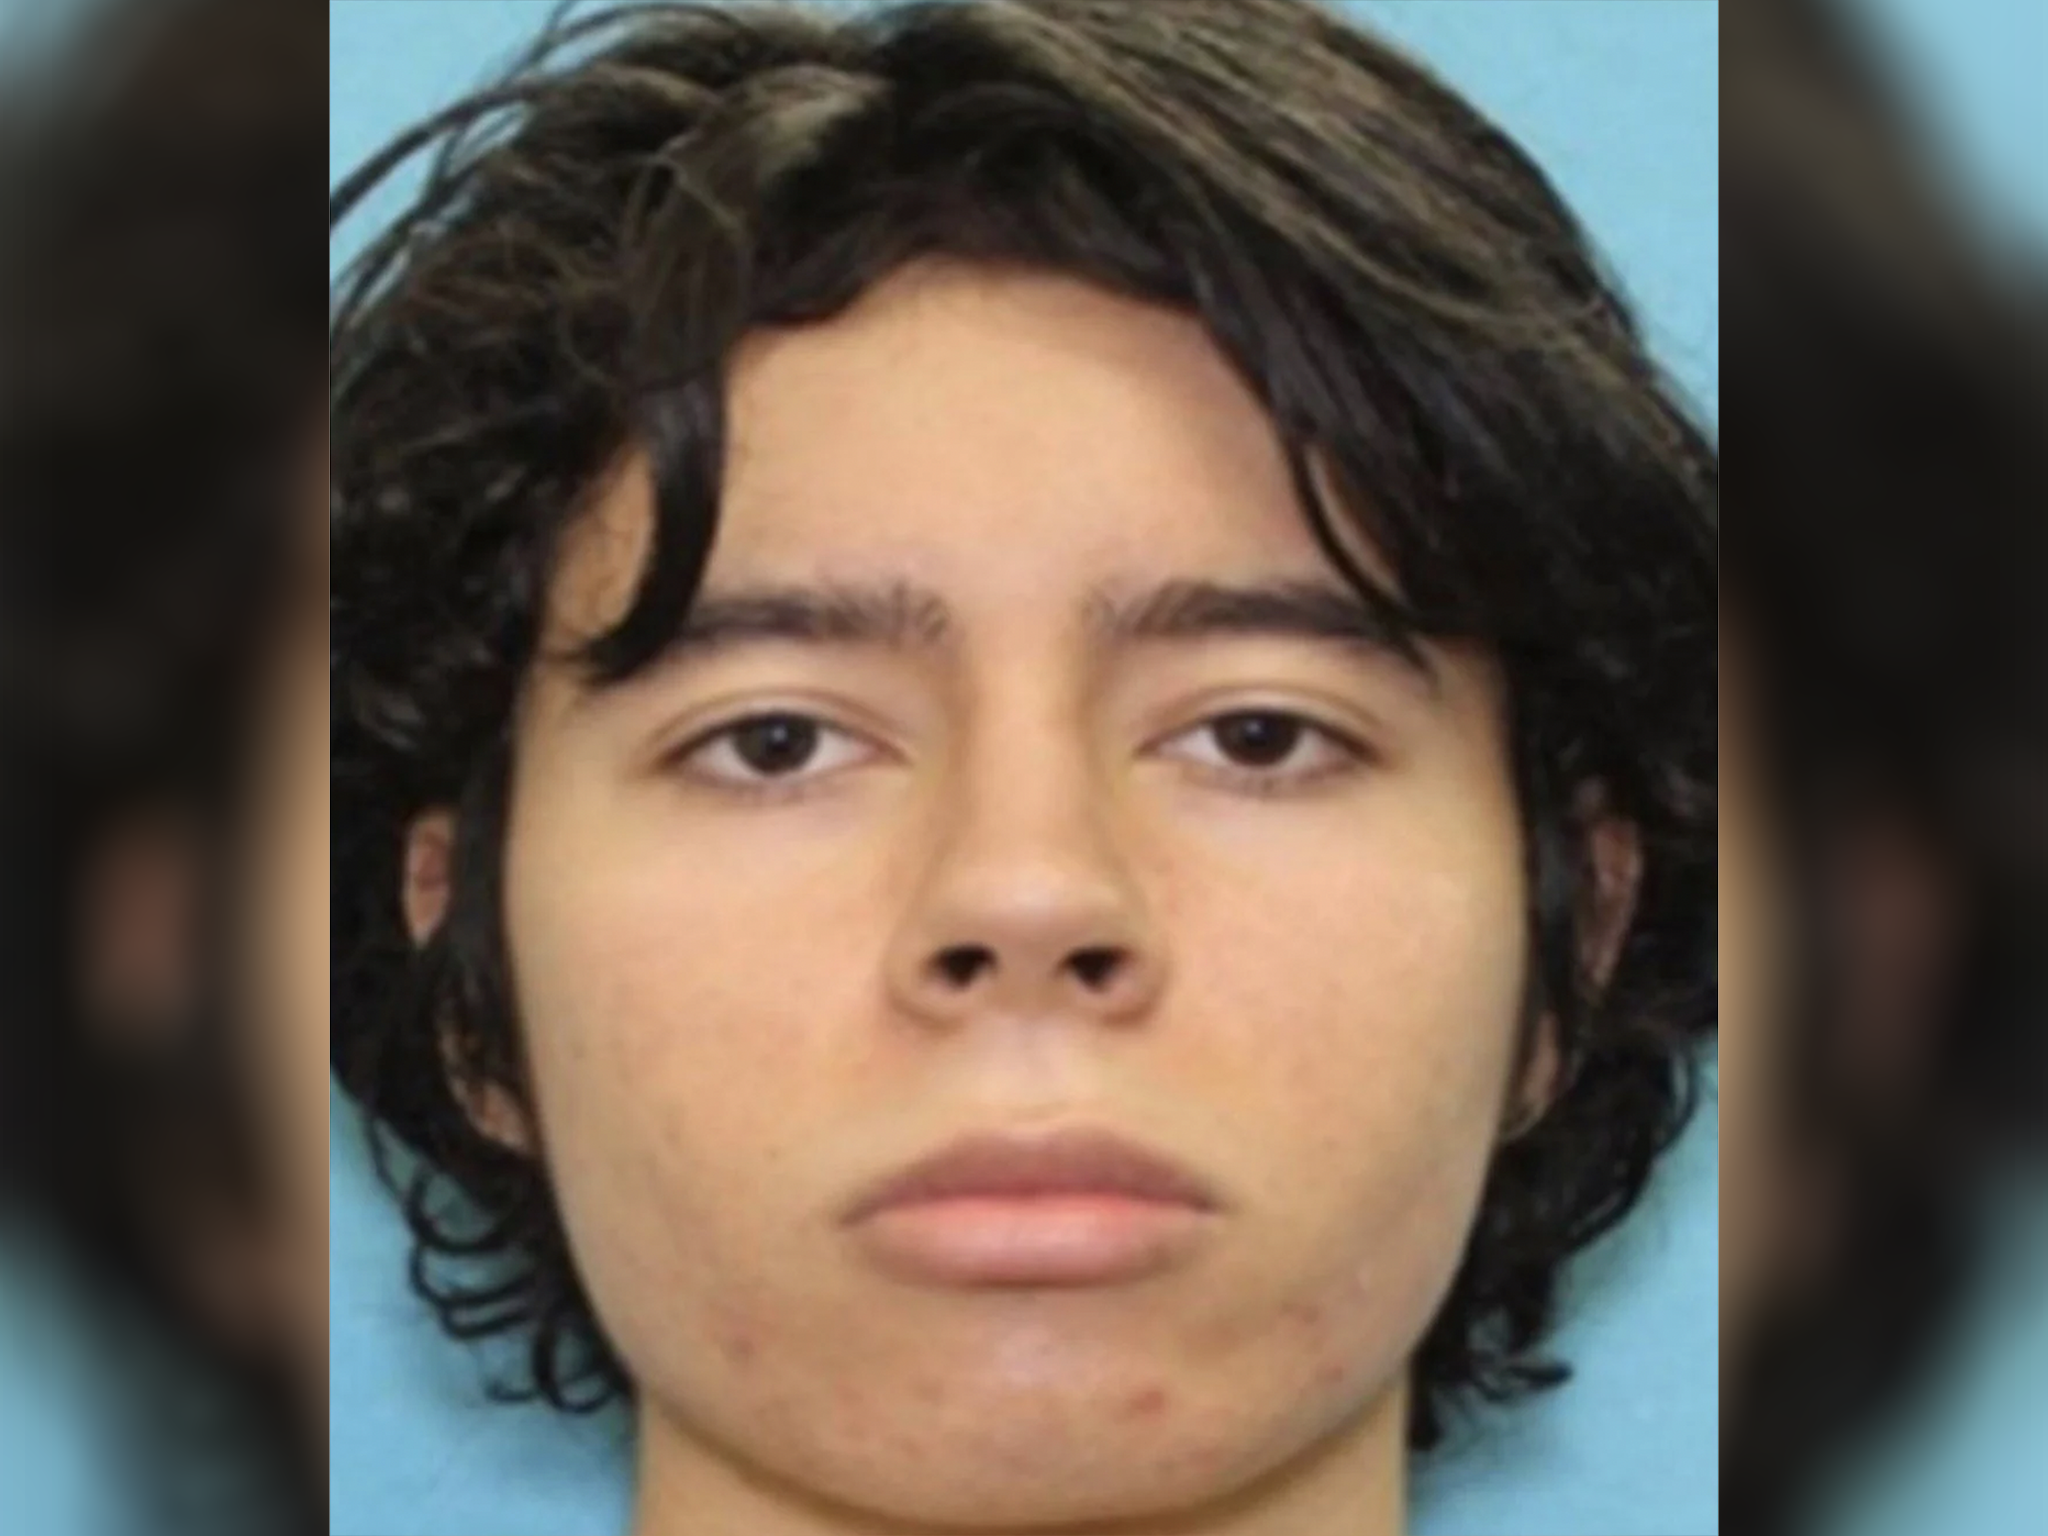 Según informes, el sospechoso de 18 años, Salvador Ramos, compró dos fusiles legalmente días antes del ataque en Uvalde